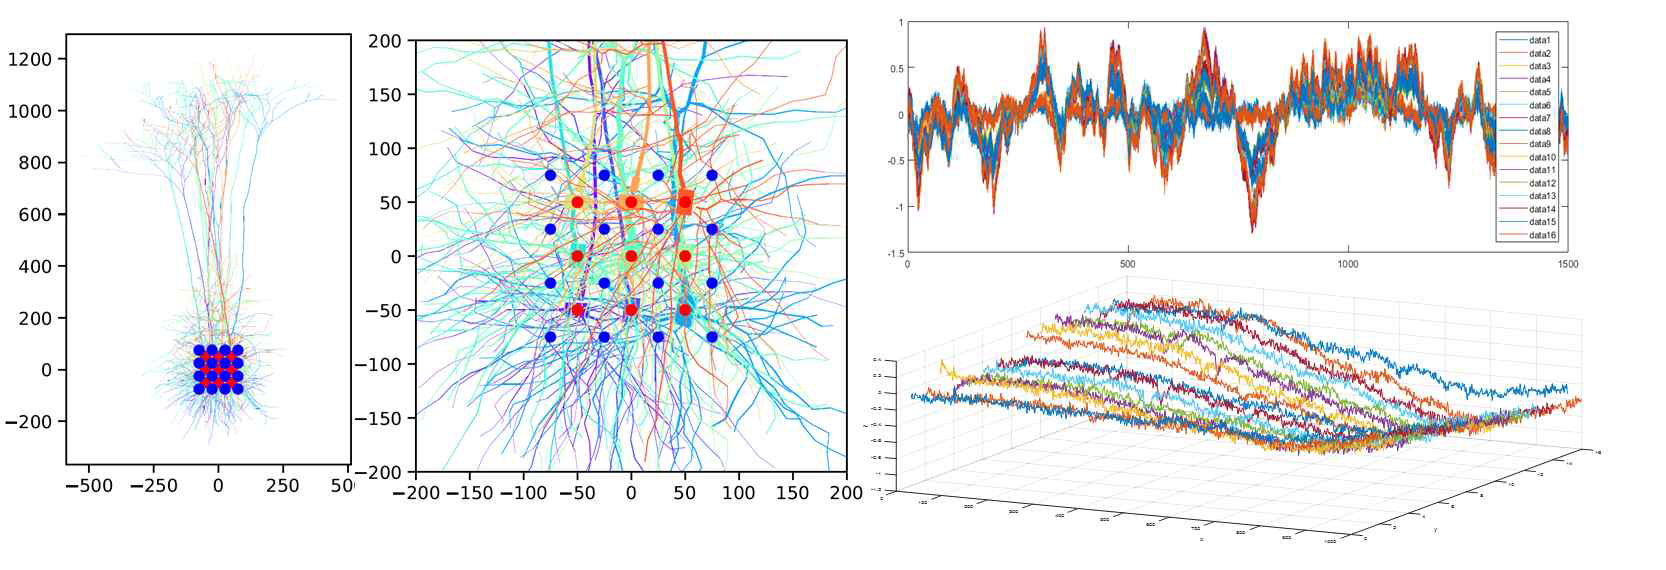 10개의 신경 세포에서 발생한 신호를 16개의 Multi Electrode Array를 통해 수신한 시뮬레이션 결과 그래프